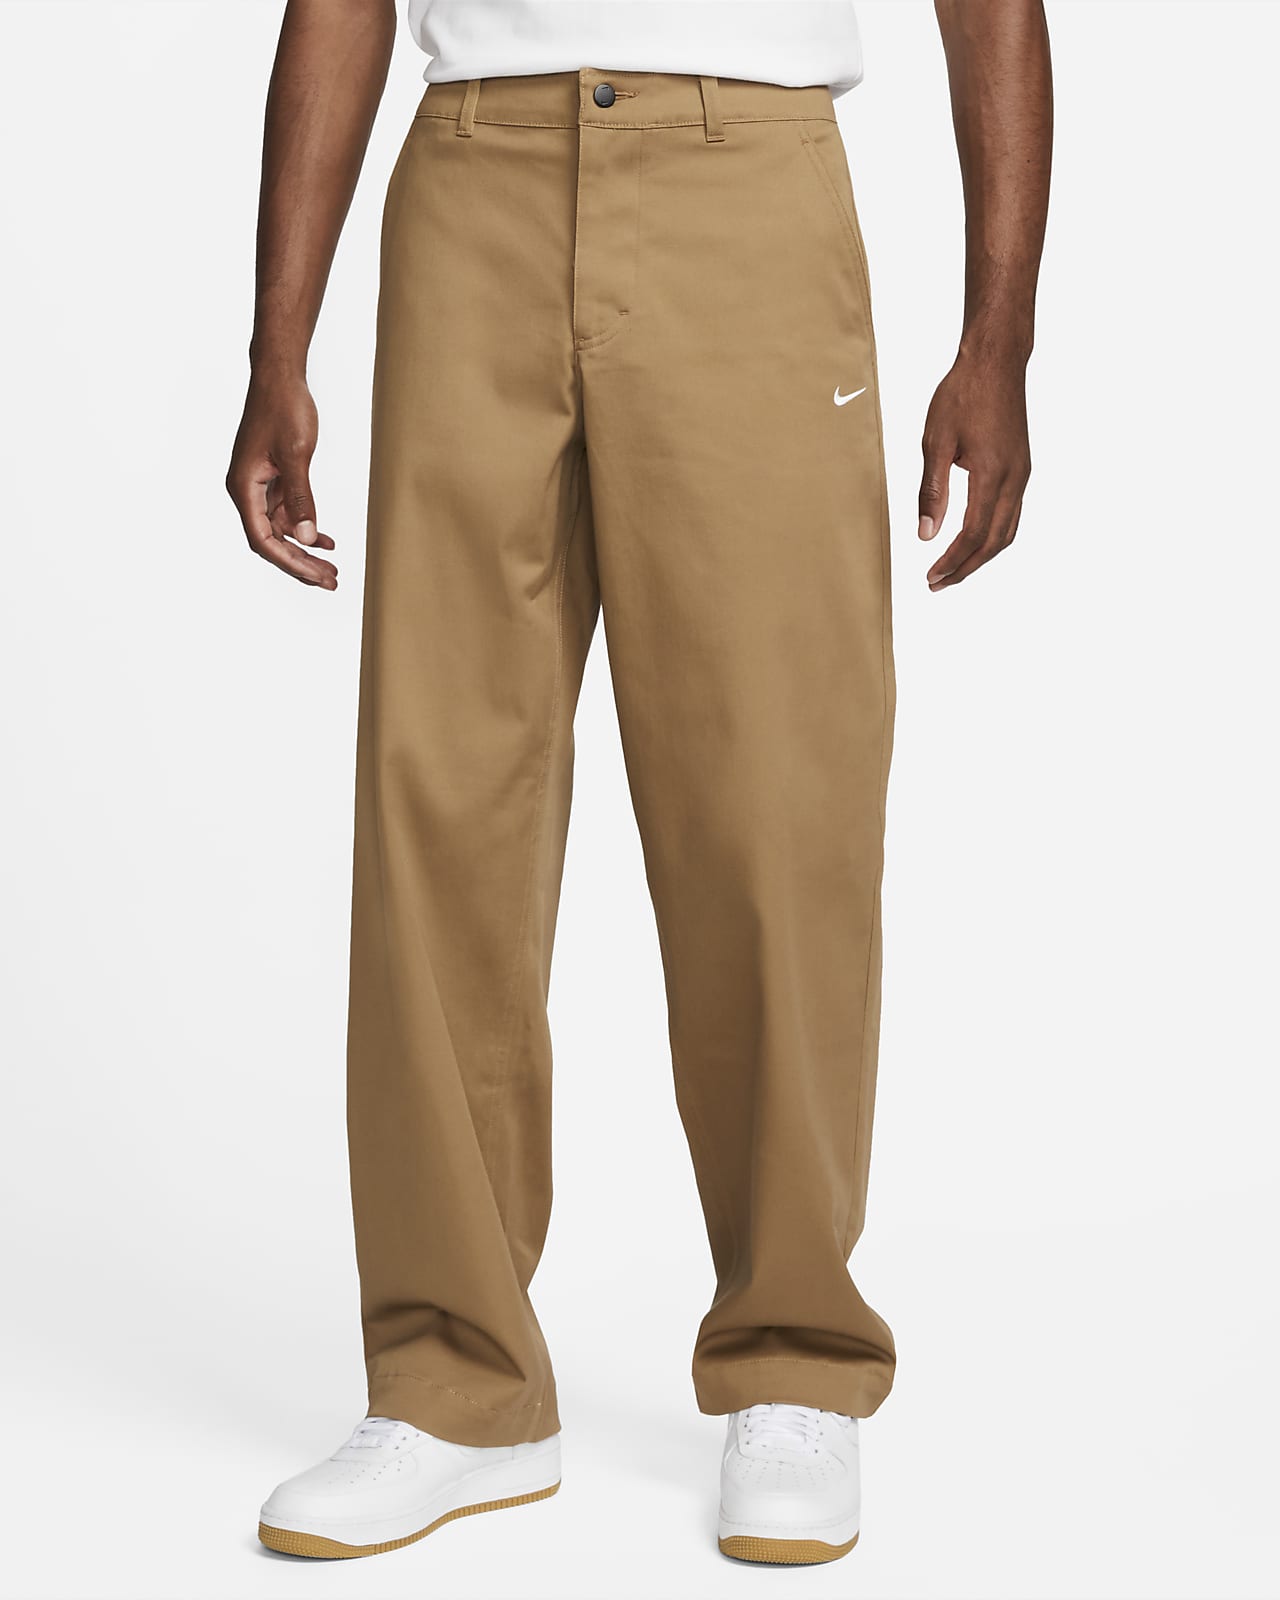 Nike Life Men's Cotton Chino Trousers. Nike LU